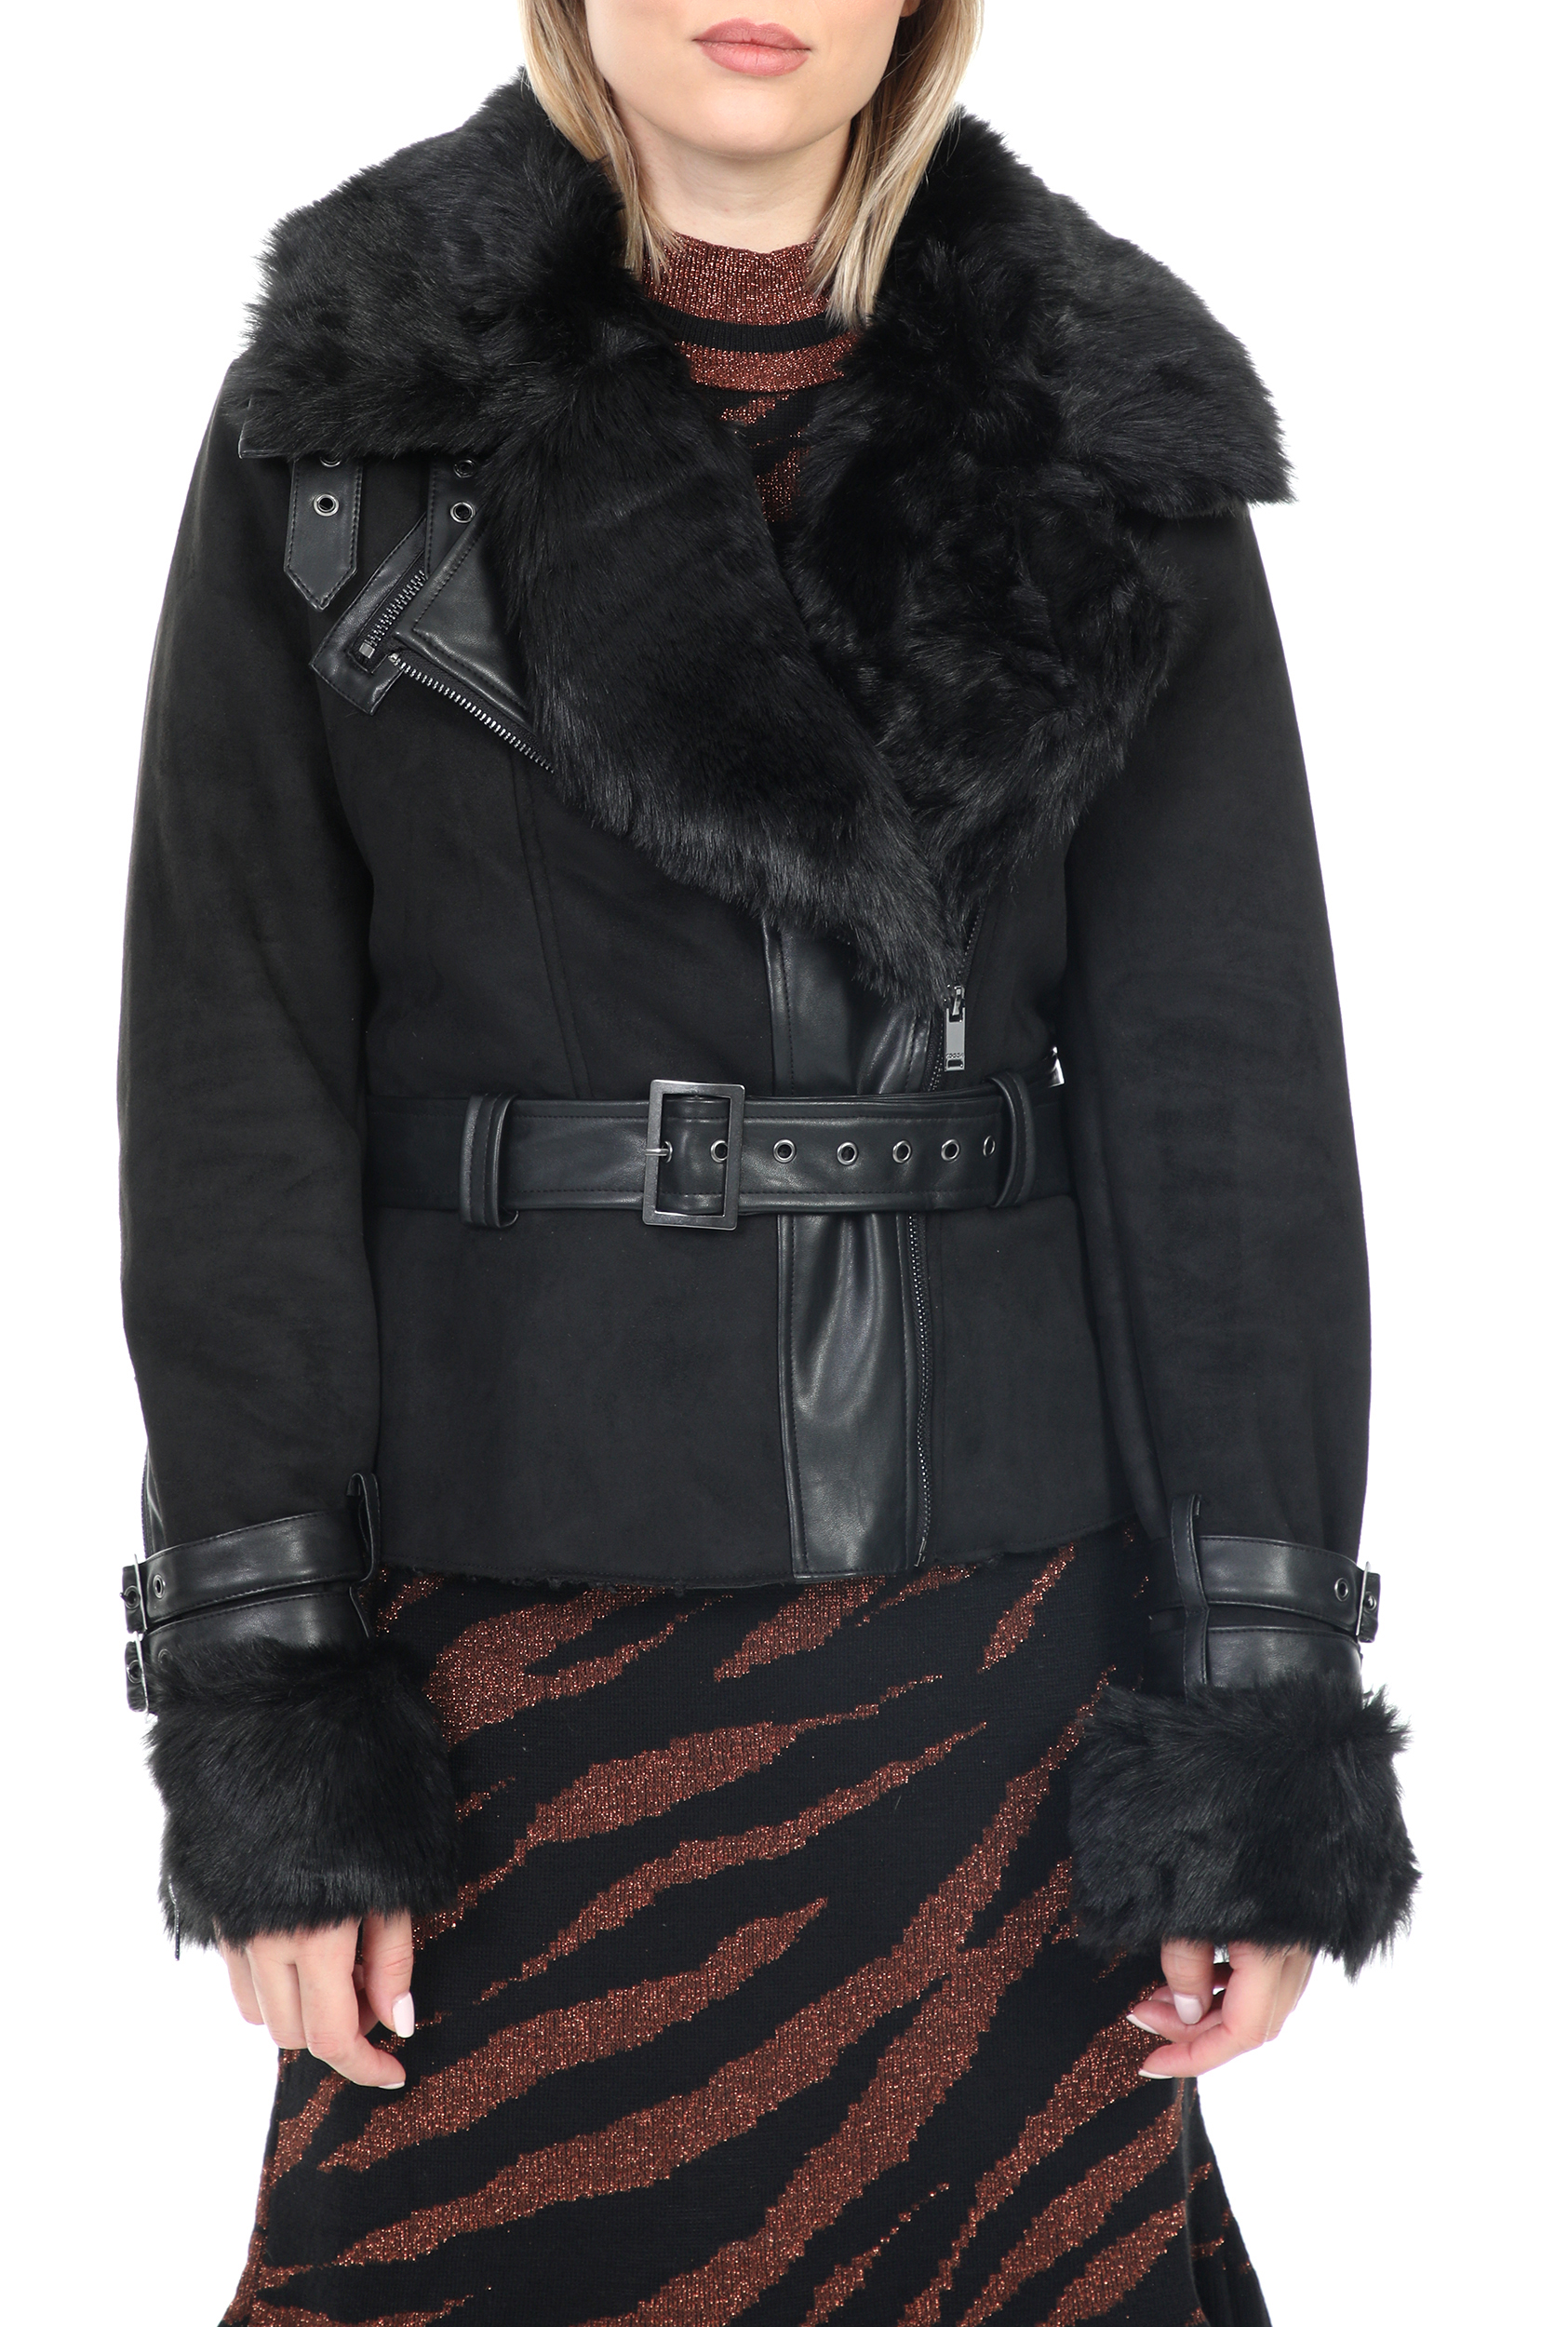 KOCCA – Γυναικειο jacket KOCCA TRACES μαυρο